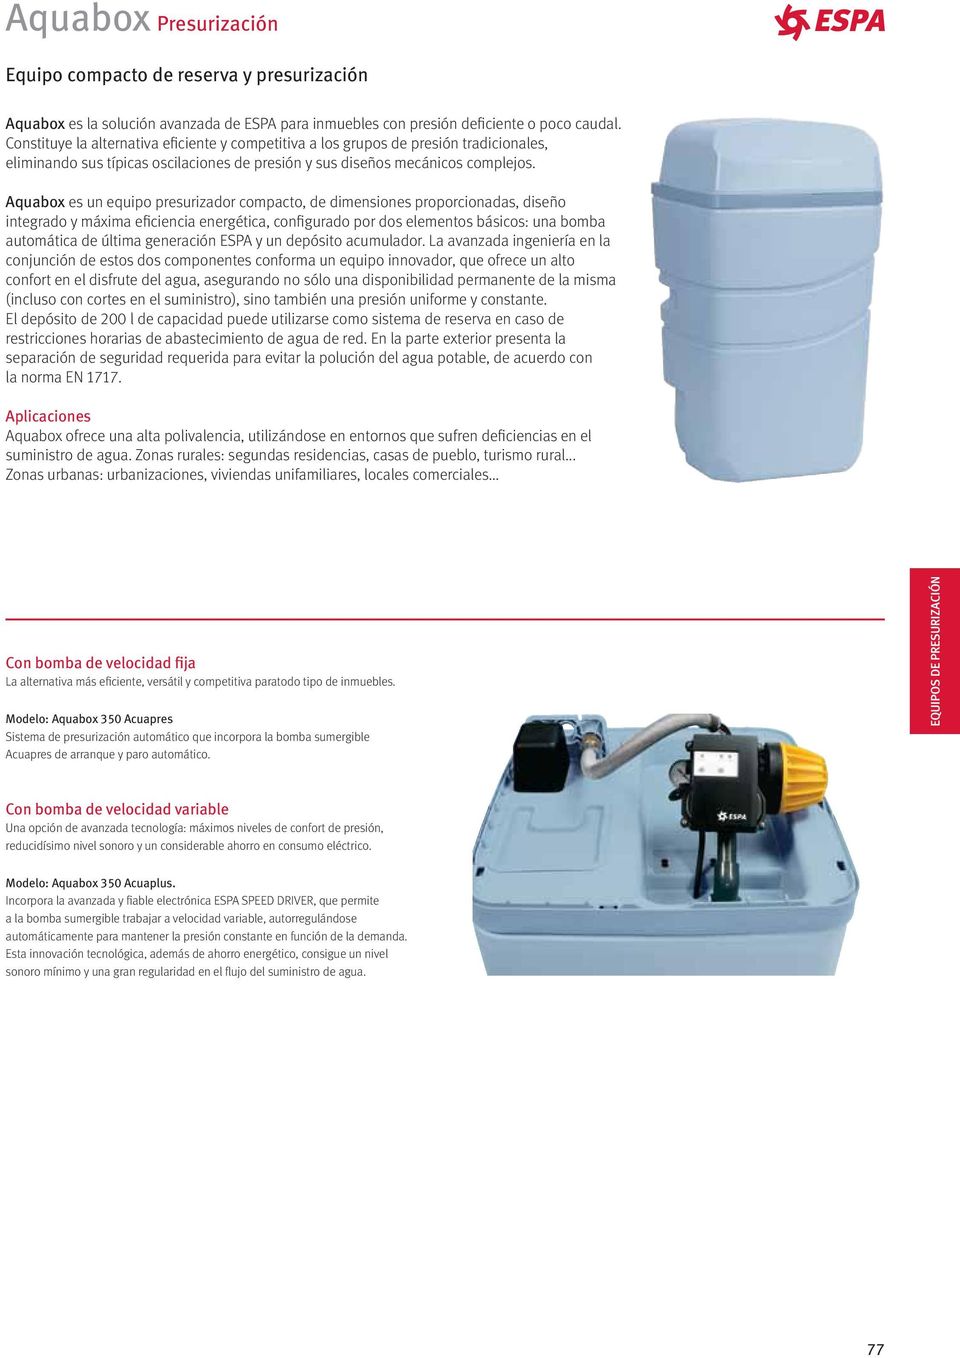 Aquabox es un equipo presurizador compacto, de dimensiones proporcionadas, diseño integrado y máxima eficiencia energética, configurado por dos elementos básicos: una bomba automática de última